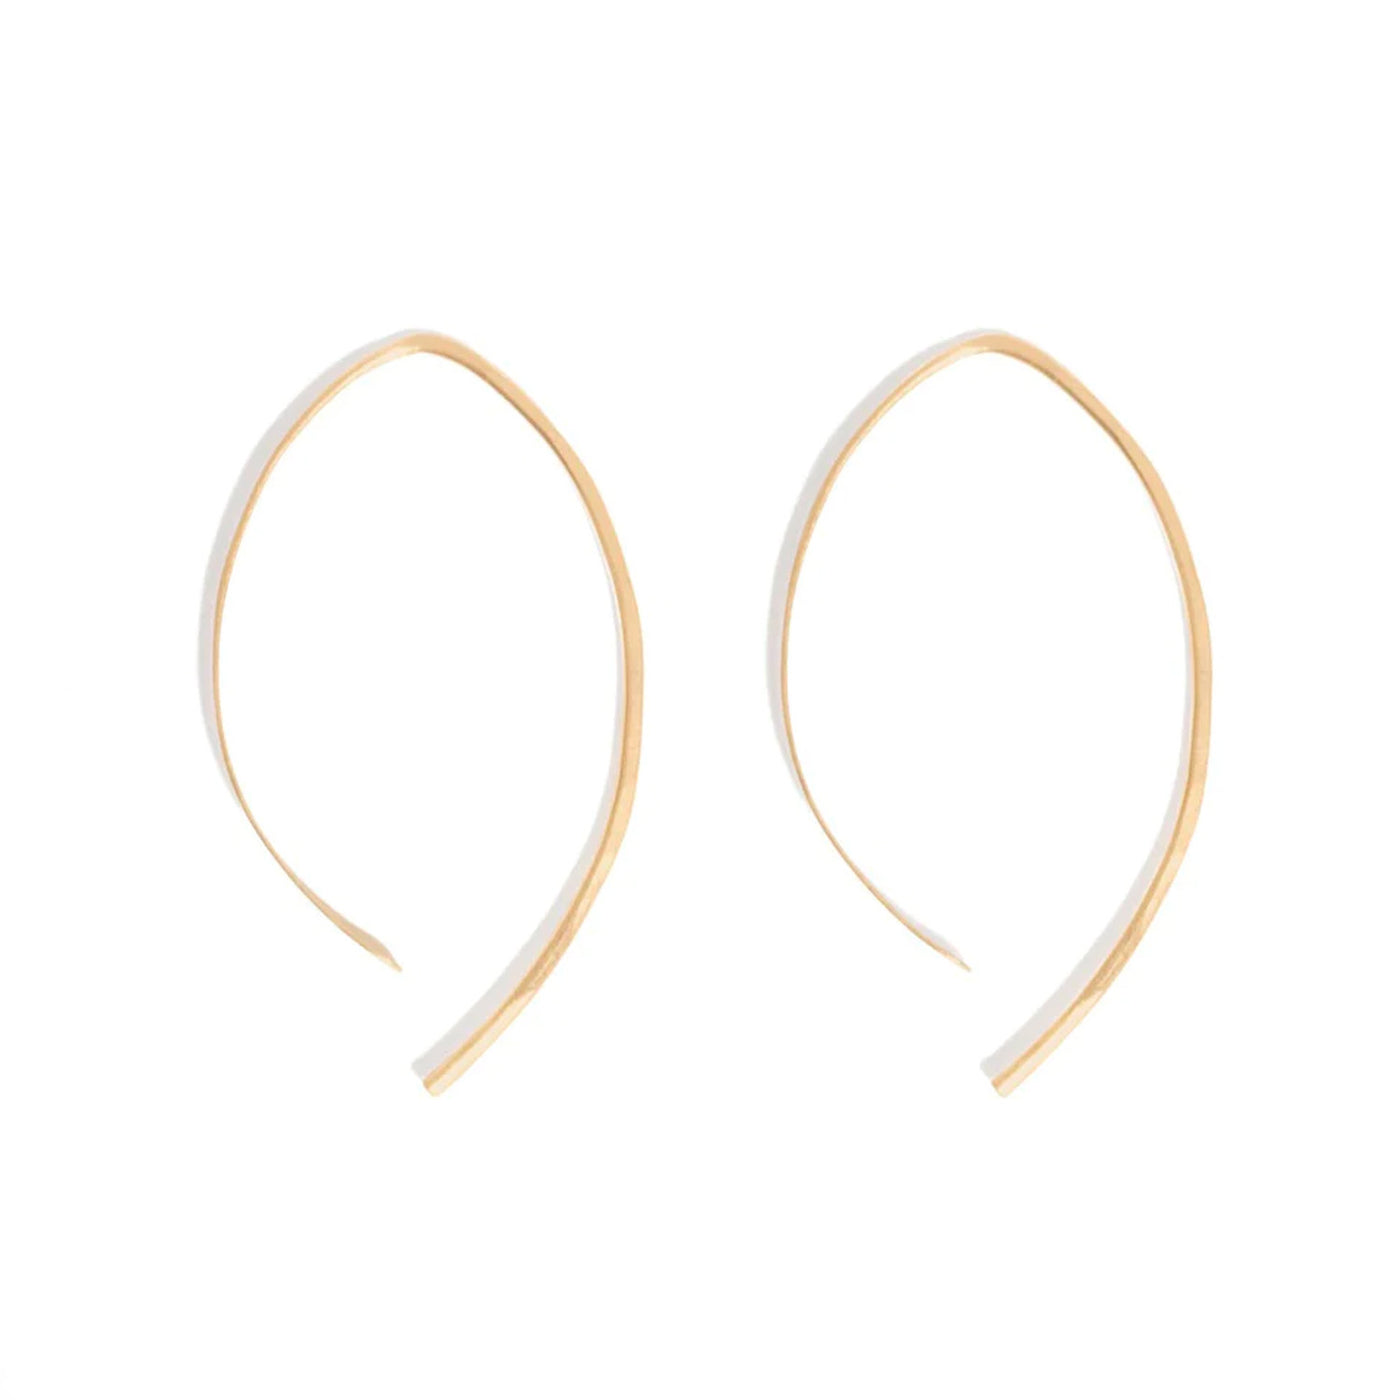 1.5" Wishbone Hoop Earrings